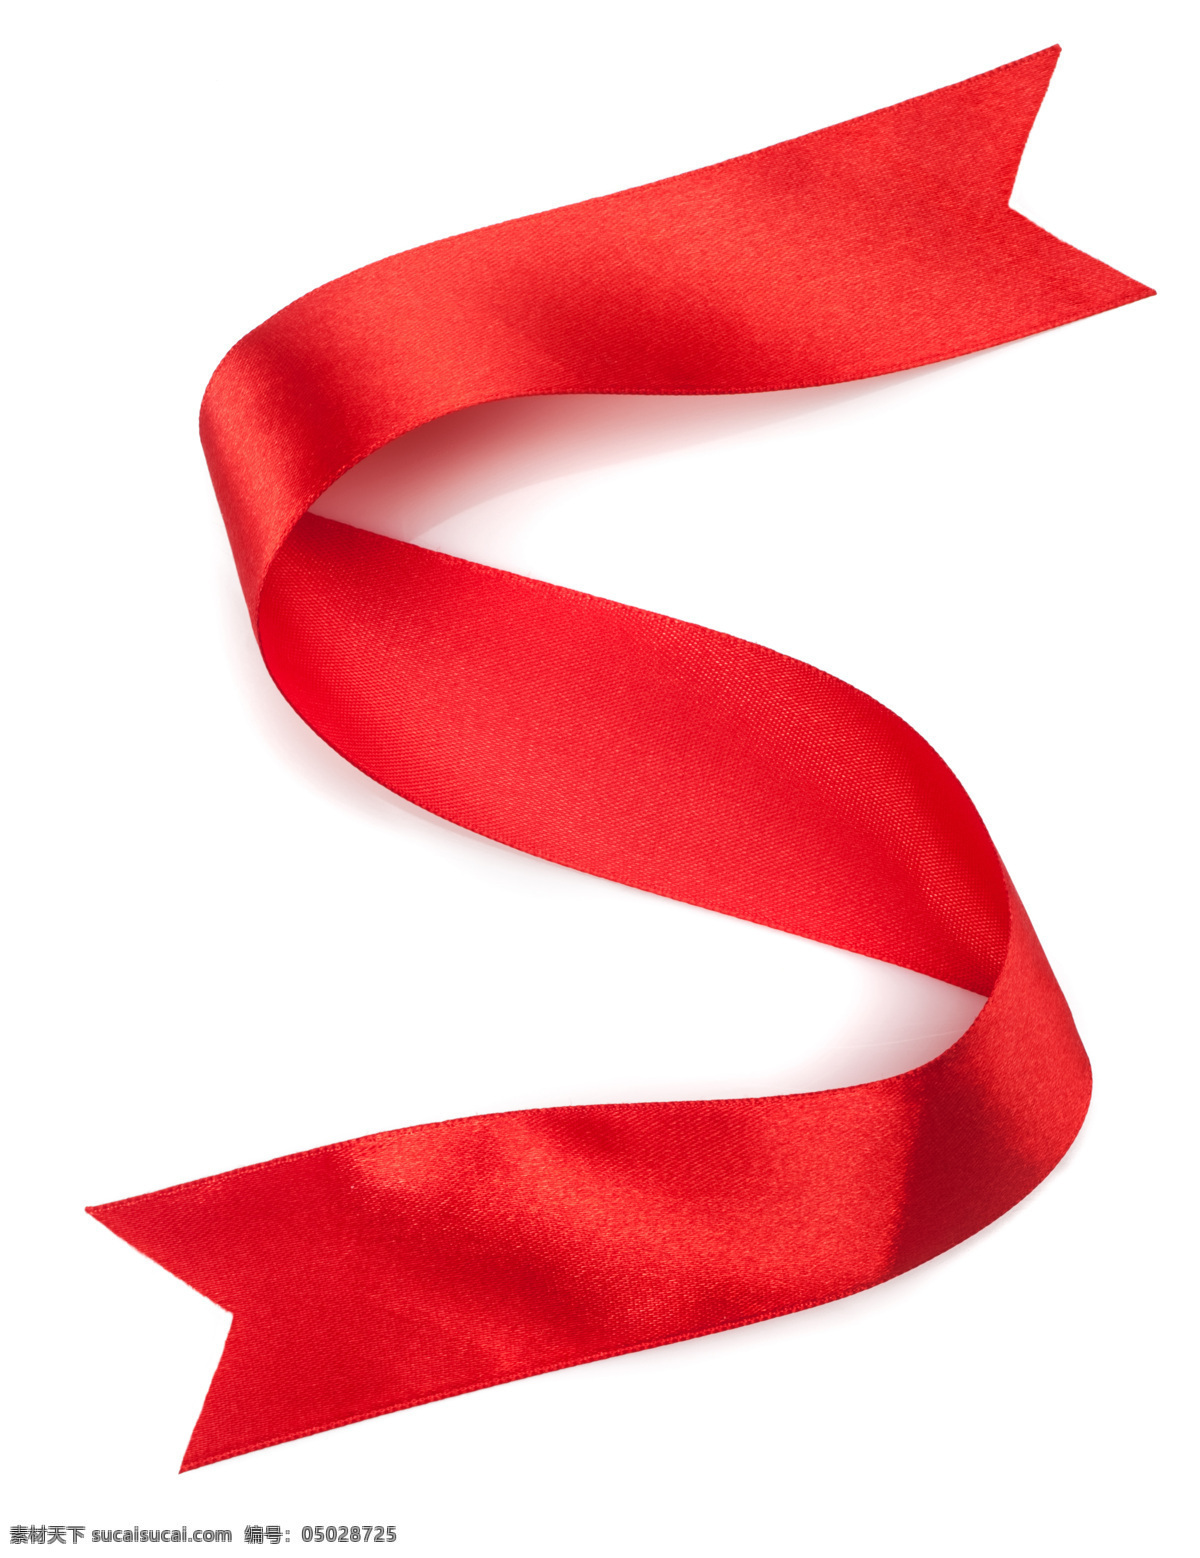 红色丝带素材 字体 红色 丝带 丝带摄影 彩色丝带 底纹背景 其他类别 生活百科 白色